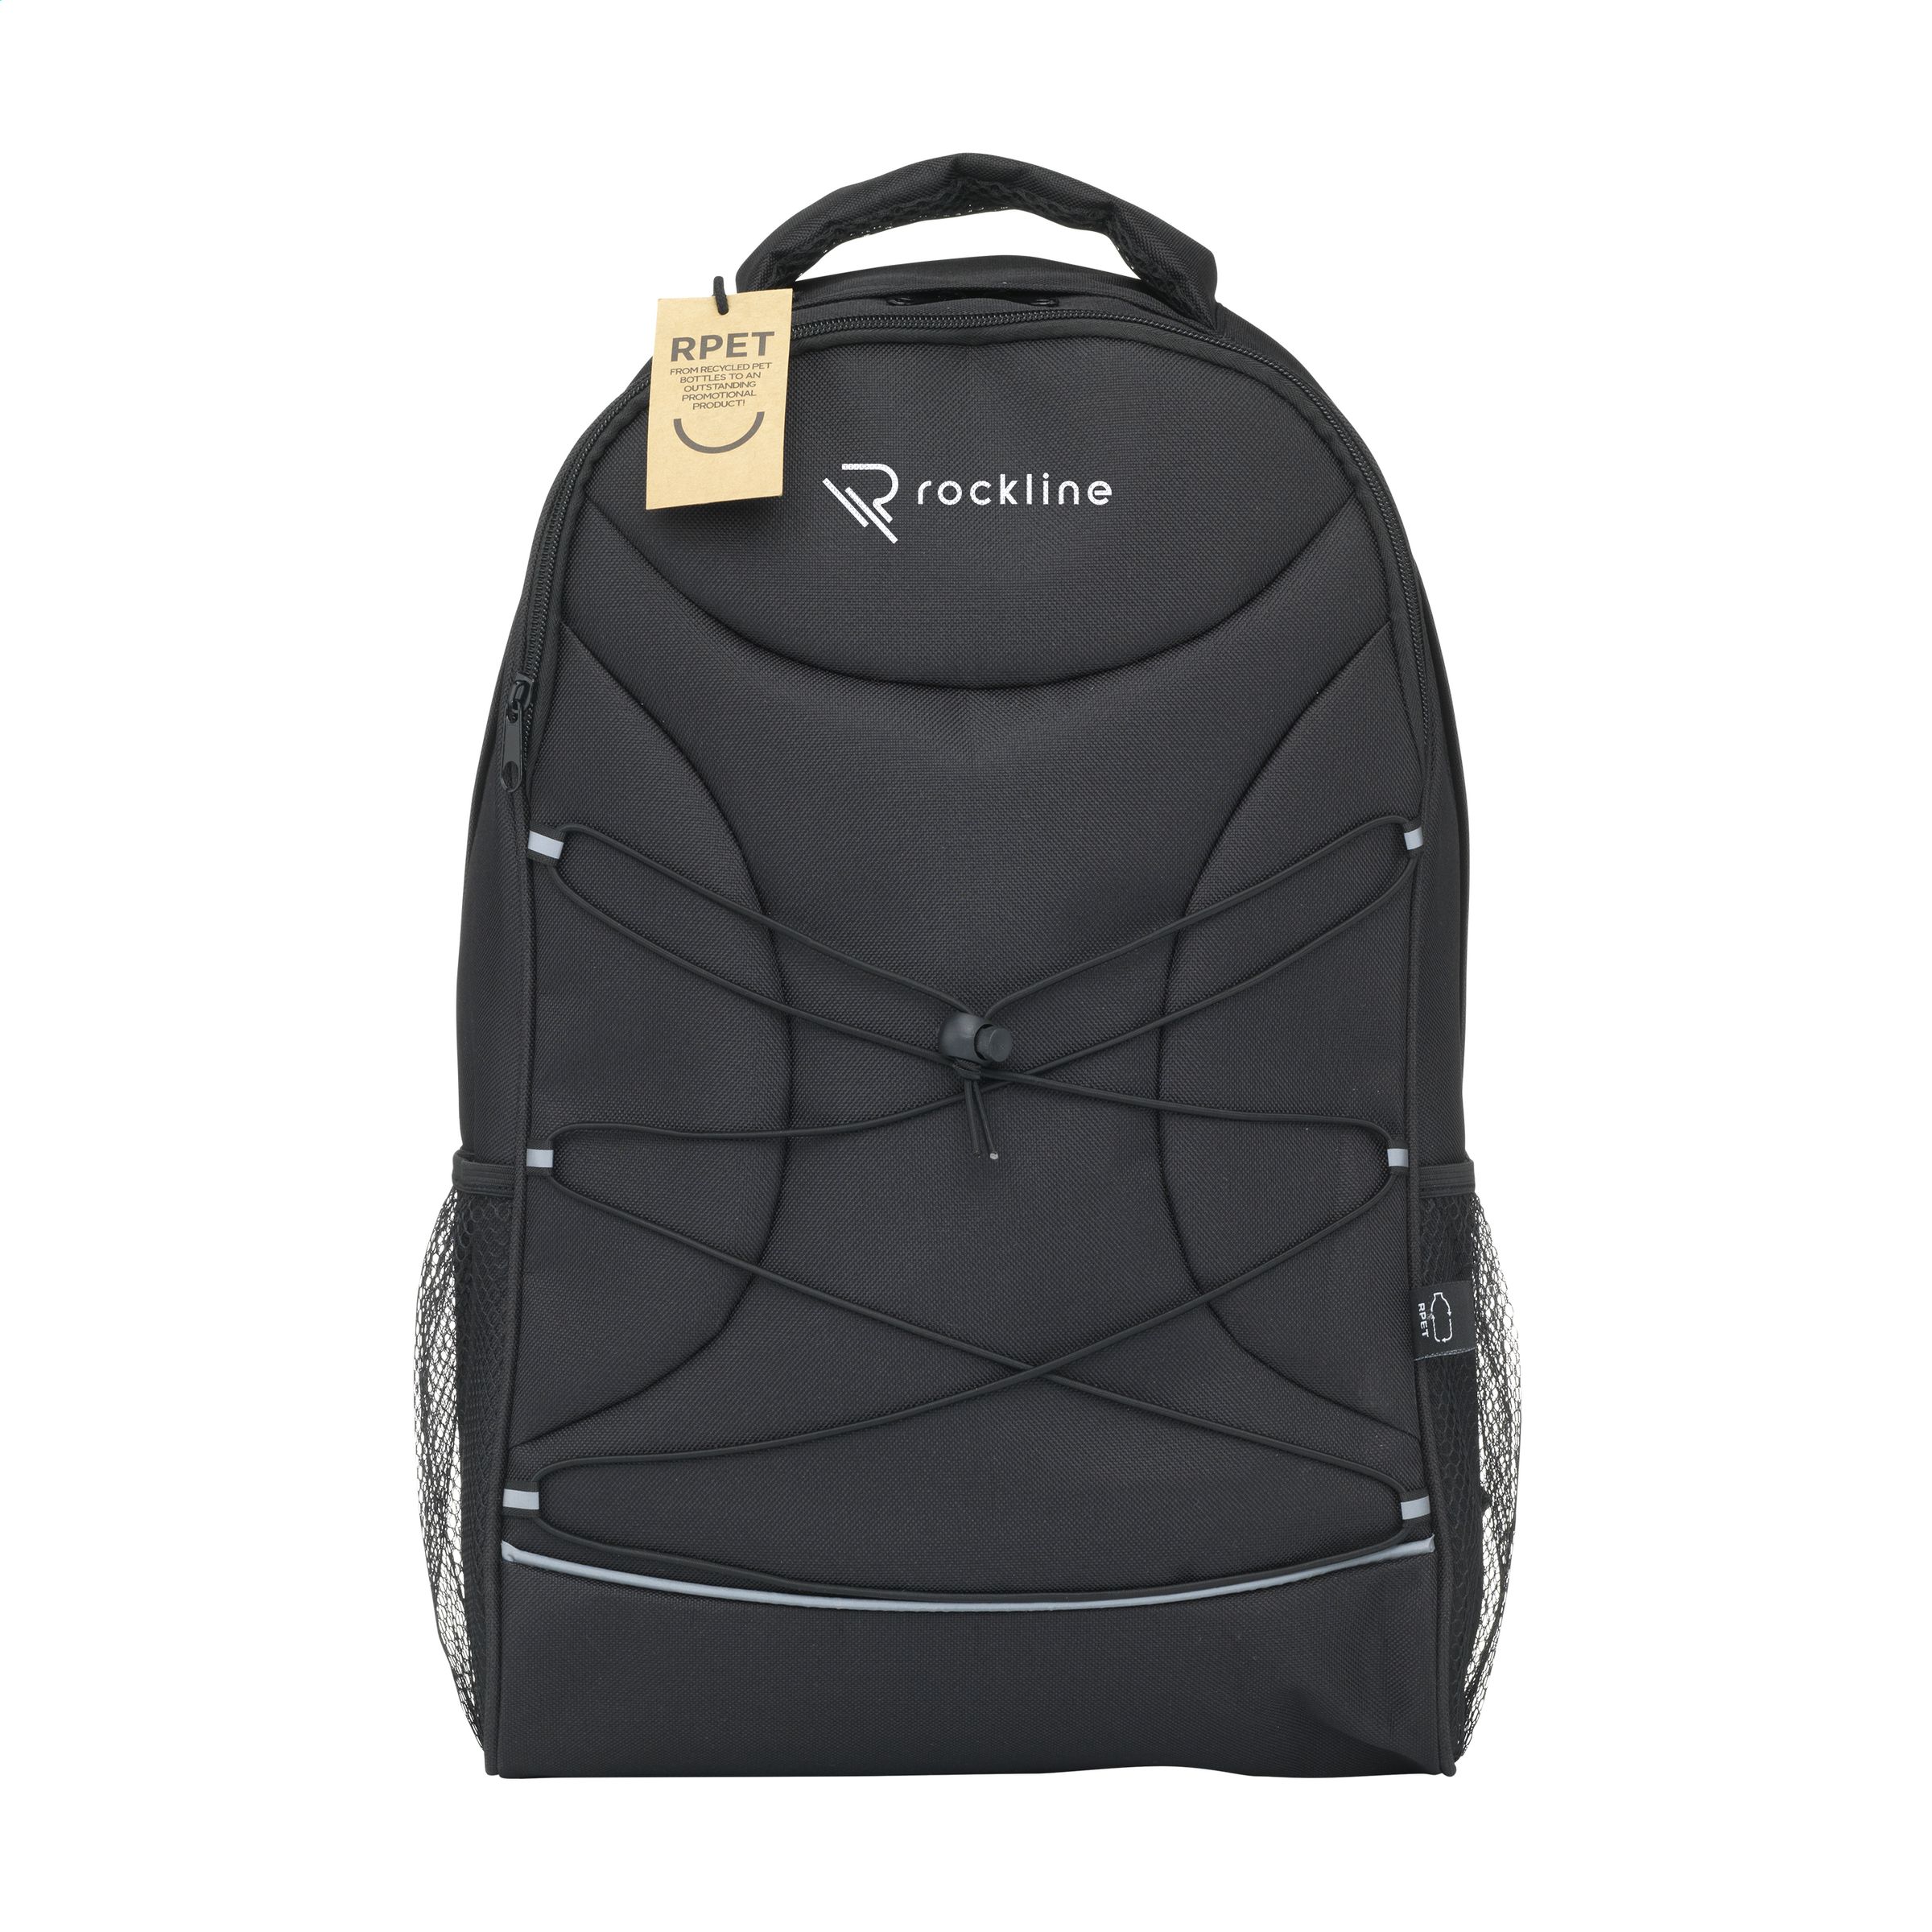 Flashline RPET Laptop Backpack sac à dos - Zaprinta Belgique